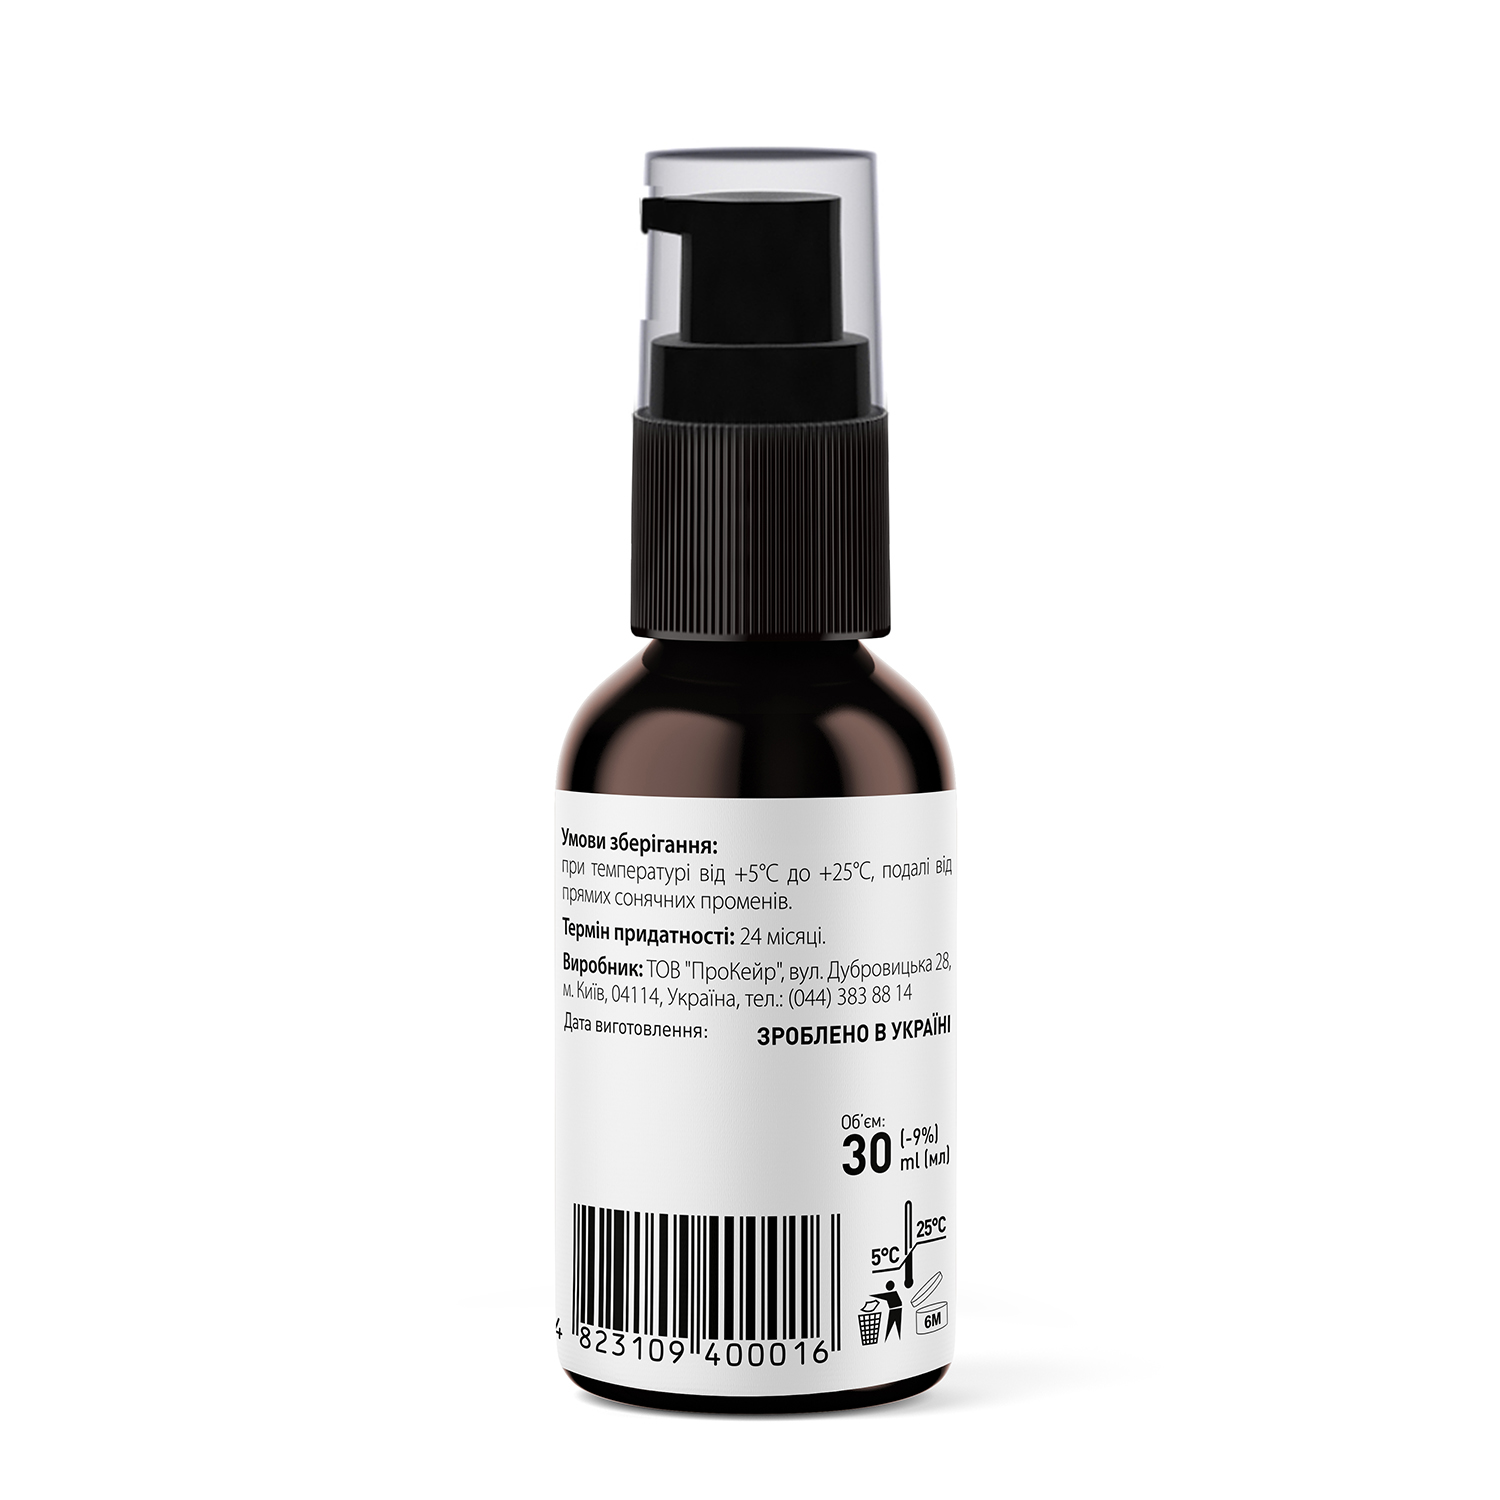 Сыворотка для лица осветляющая Tink Whitening Serum, с Actiwhite, витамином Е и феруловой кислотой, 30 мл - фото 3